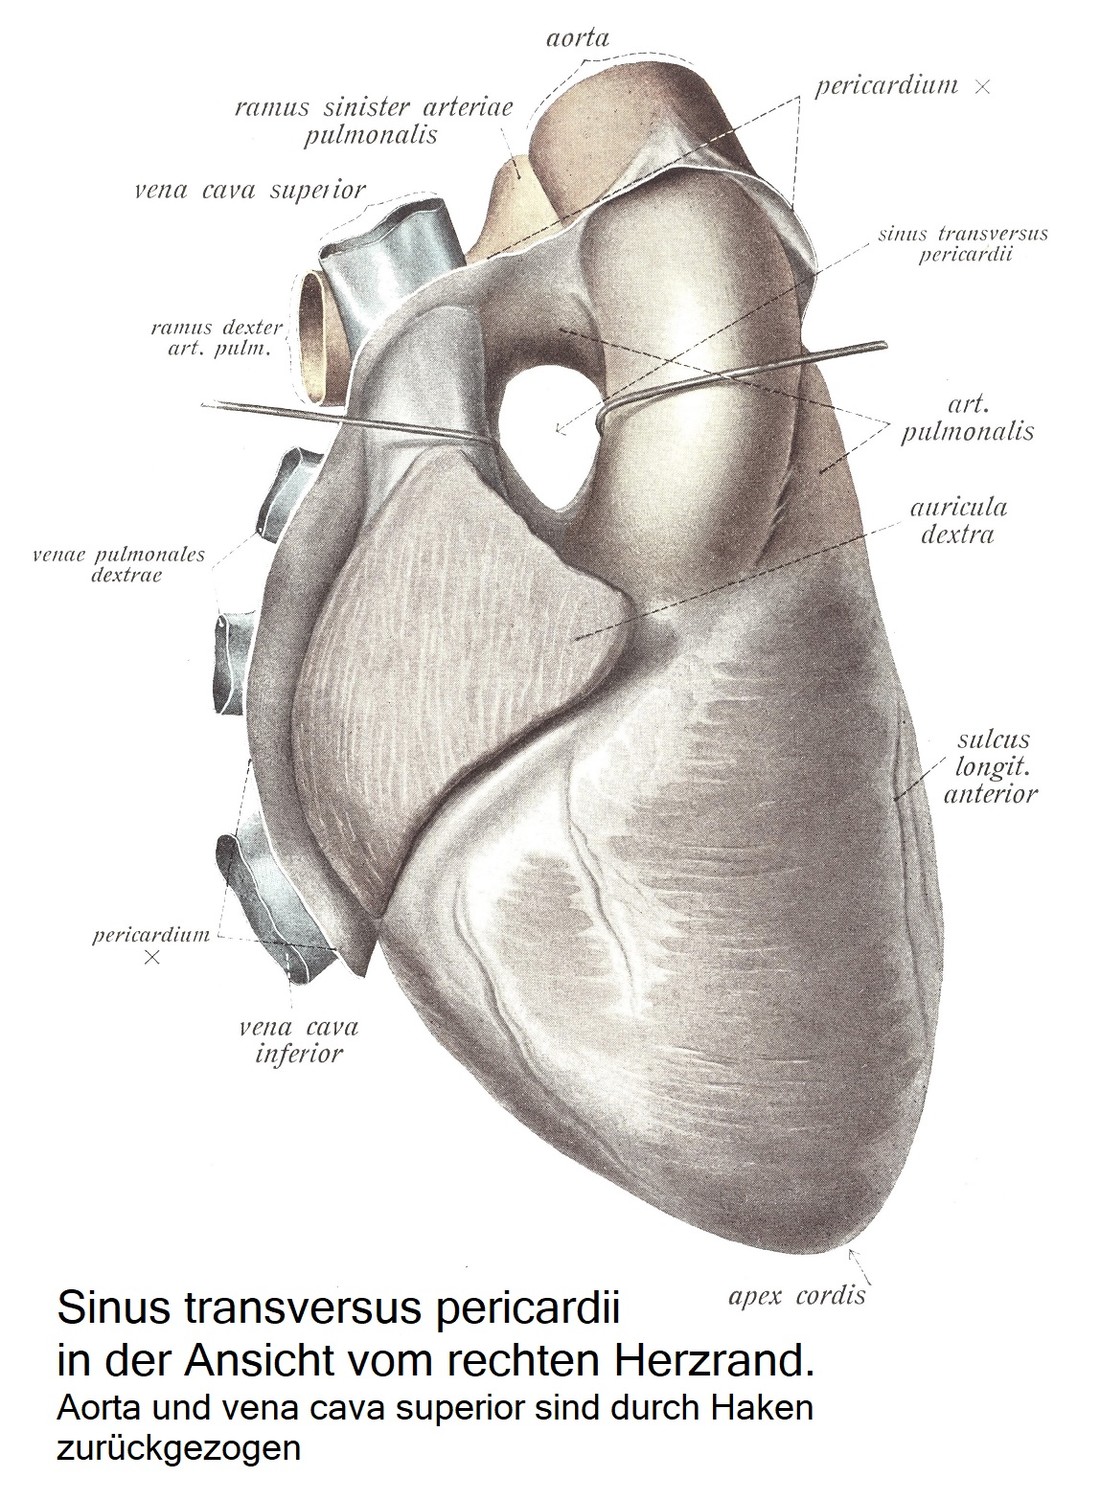 Sinus transversus pericardii при осмотре от правого края сердца. Аорту и верхнюю полую вену отводят крючками